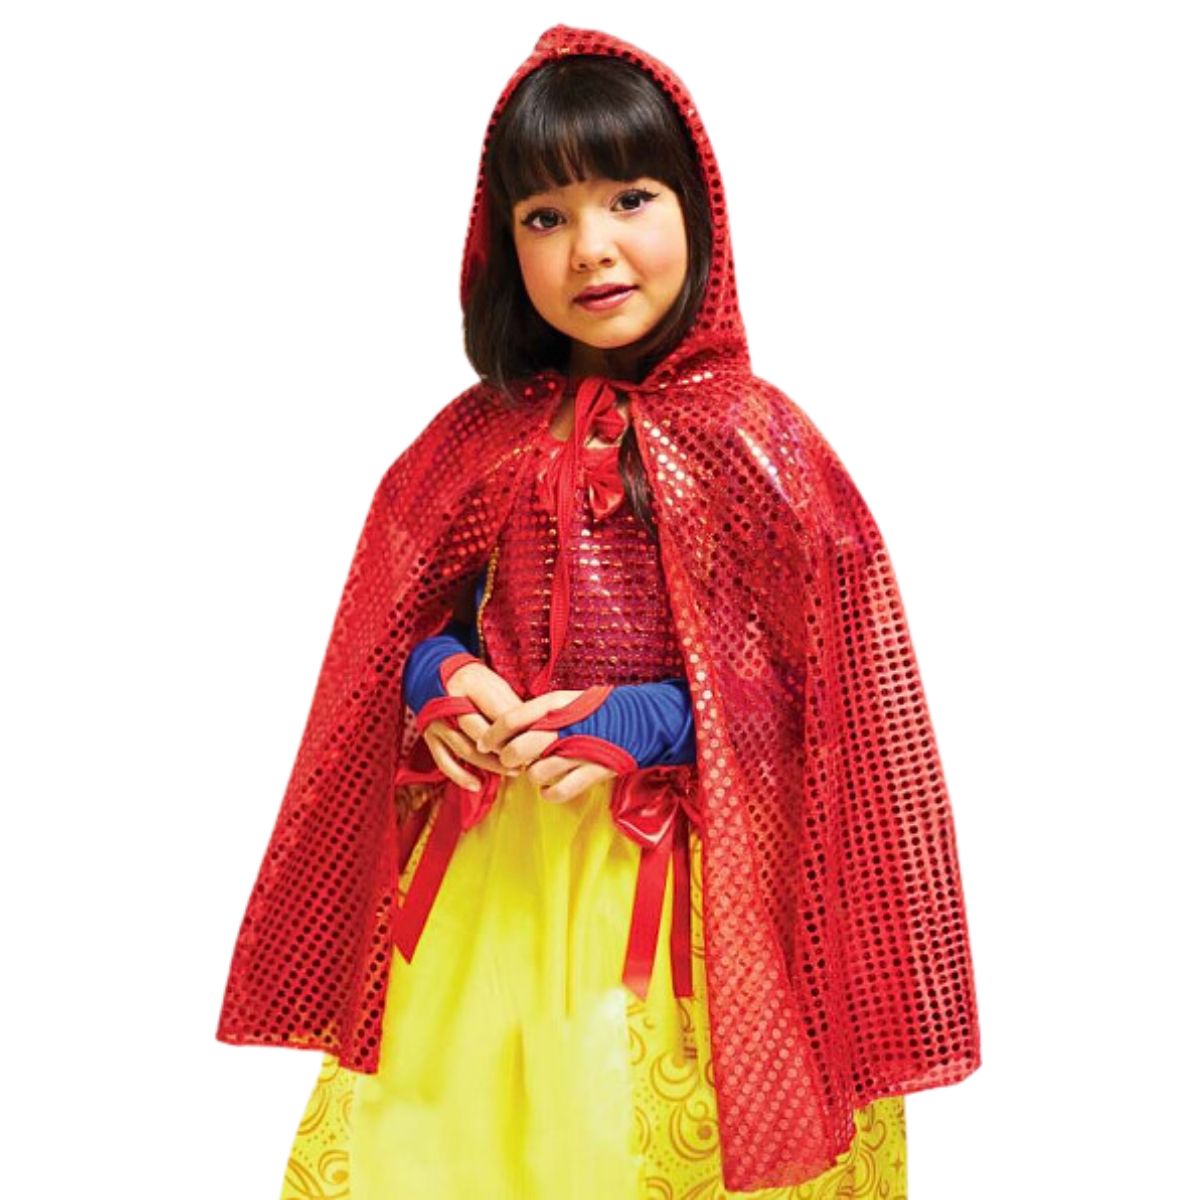 Capa Vermelha Infantil Brilhante com Capuz pra Fantasia Chapeuzinho ou Branca de Neve